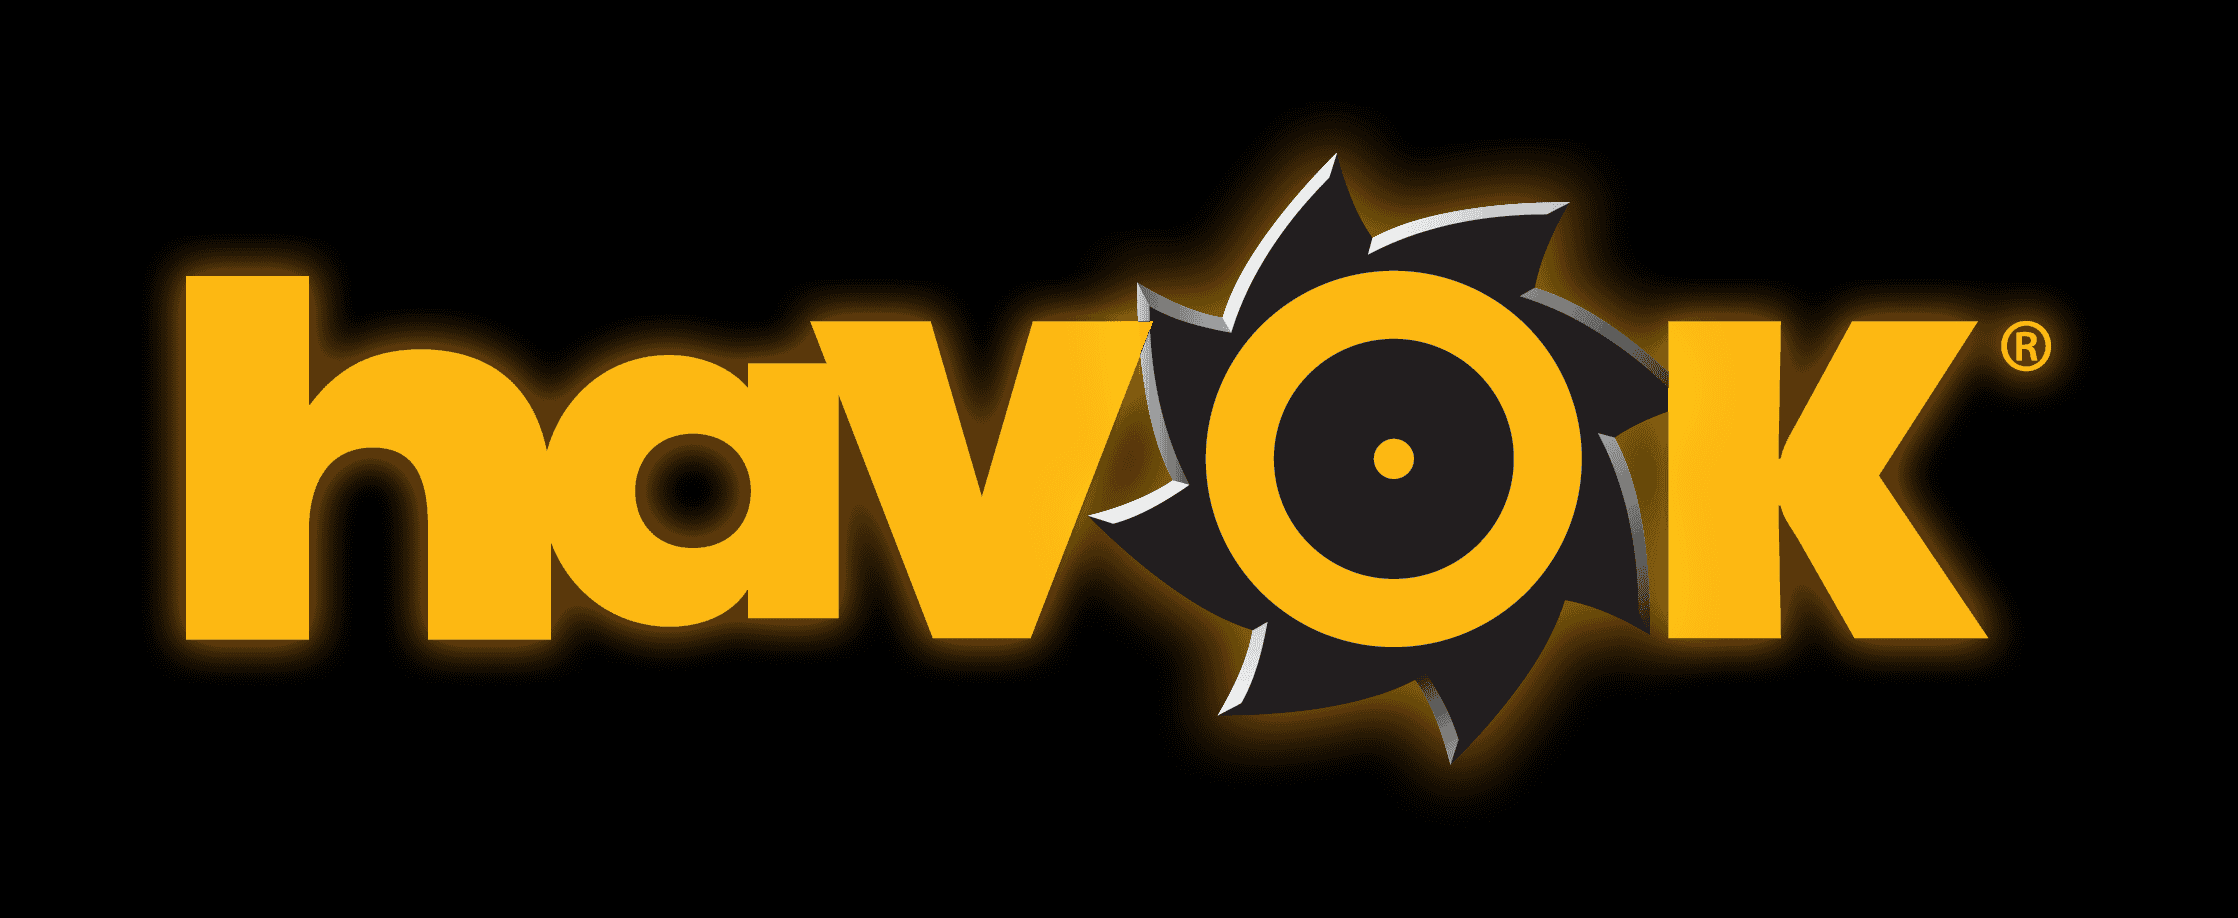 Havok_logo